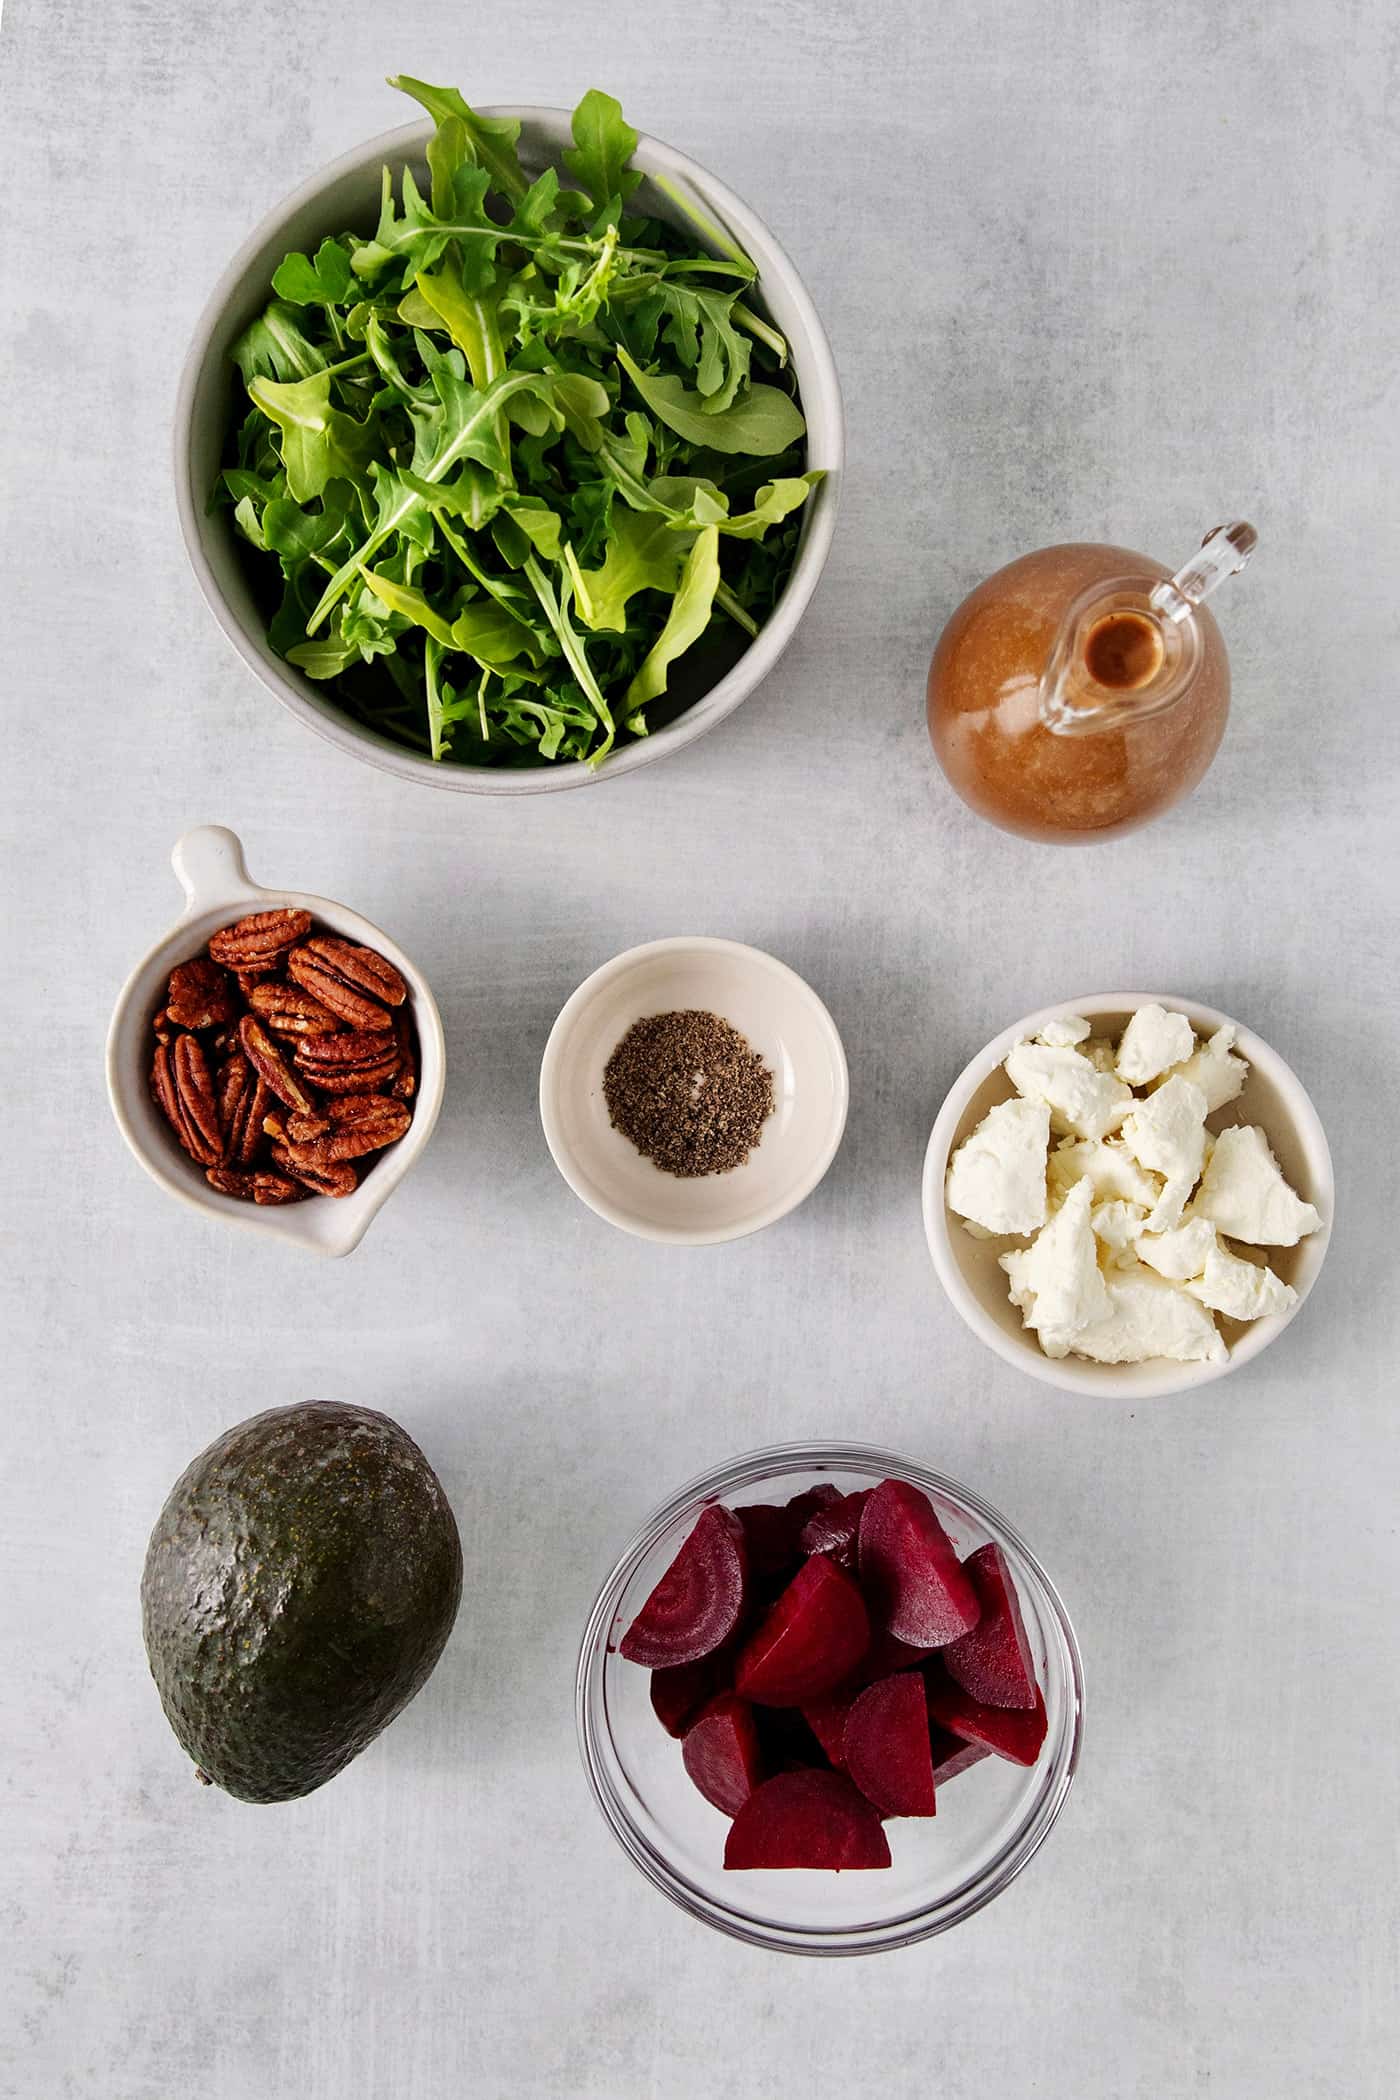 Overhead view of arugula salad ingredients